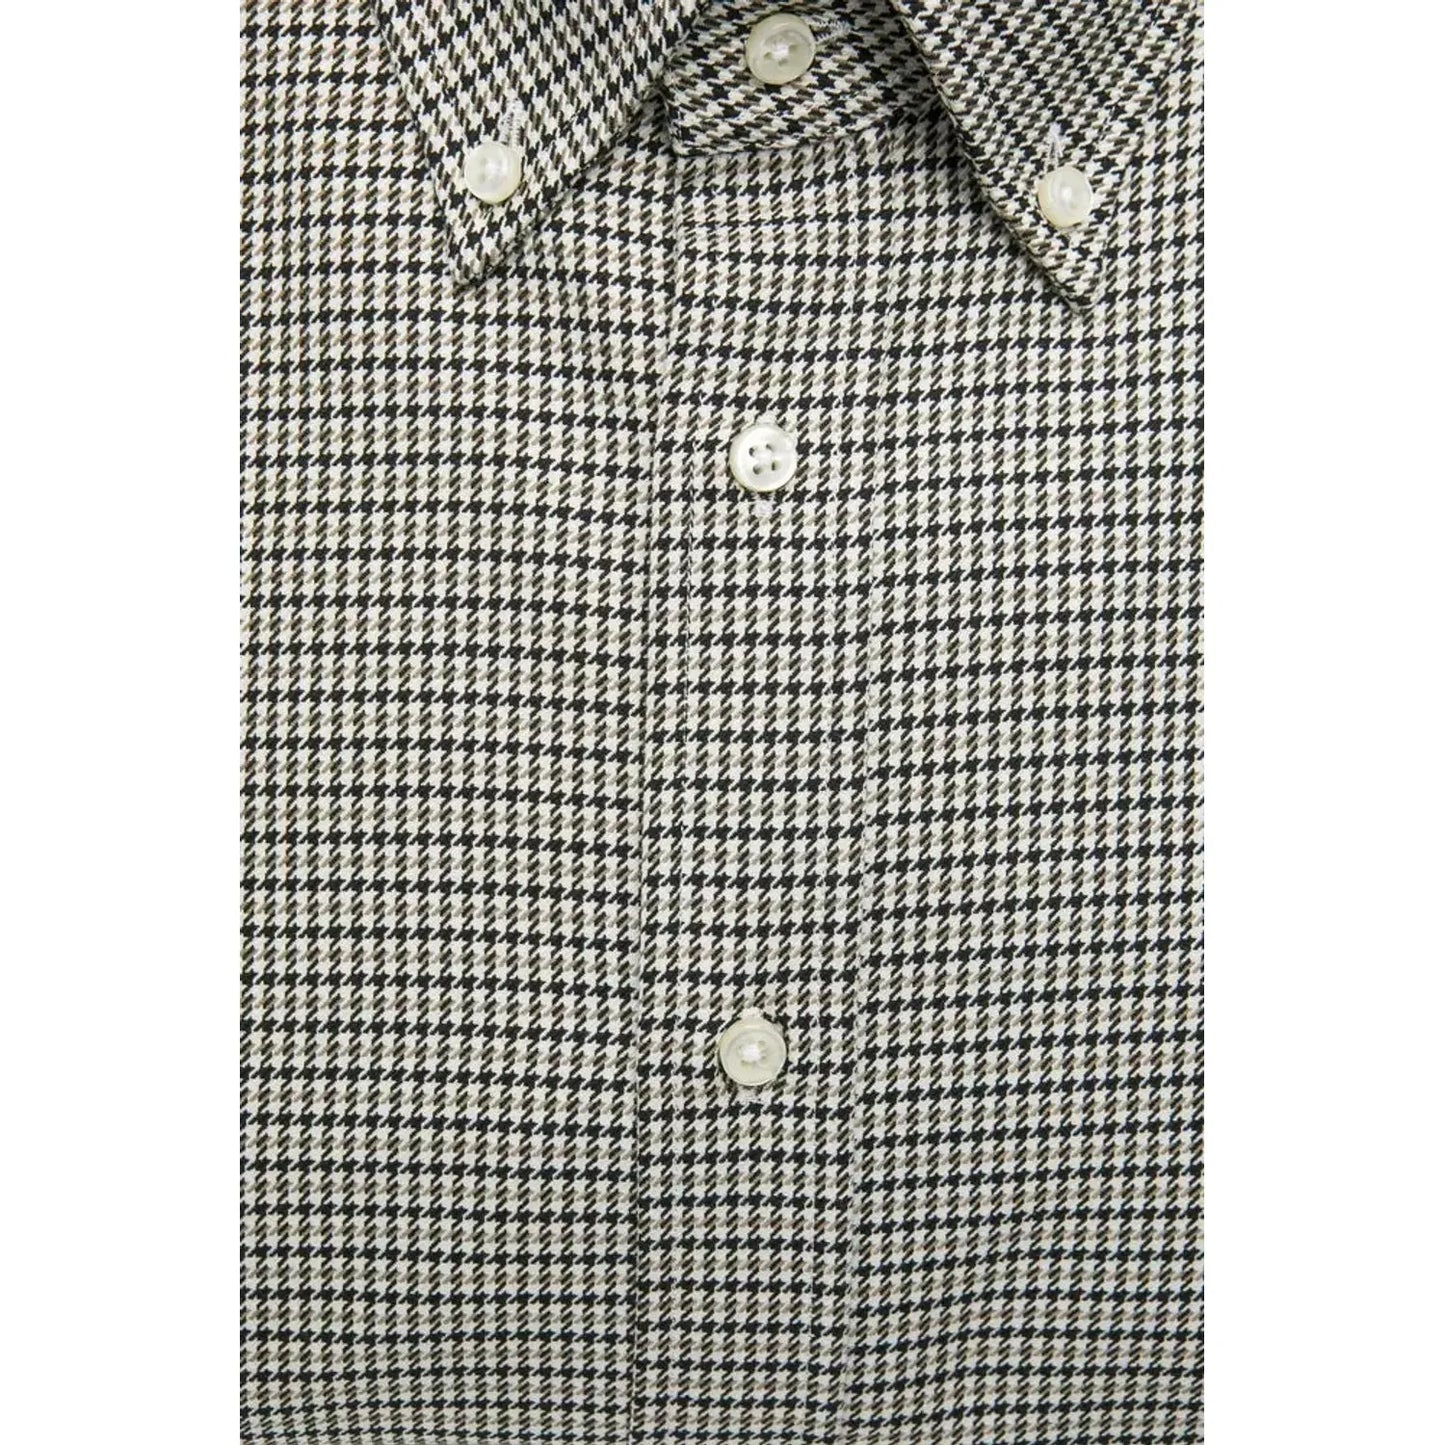 Robert Friedman Beige Cotton Button Down Regular Shirt beige-cotton-shirt-1 stock_product_image_20448_1708506483-15-35054d0f-a26.webp